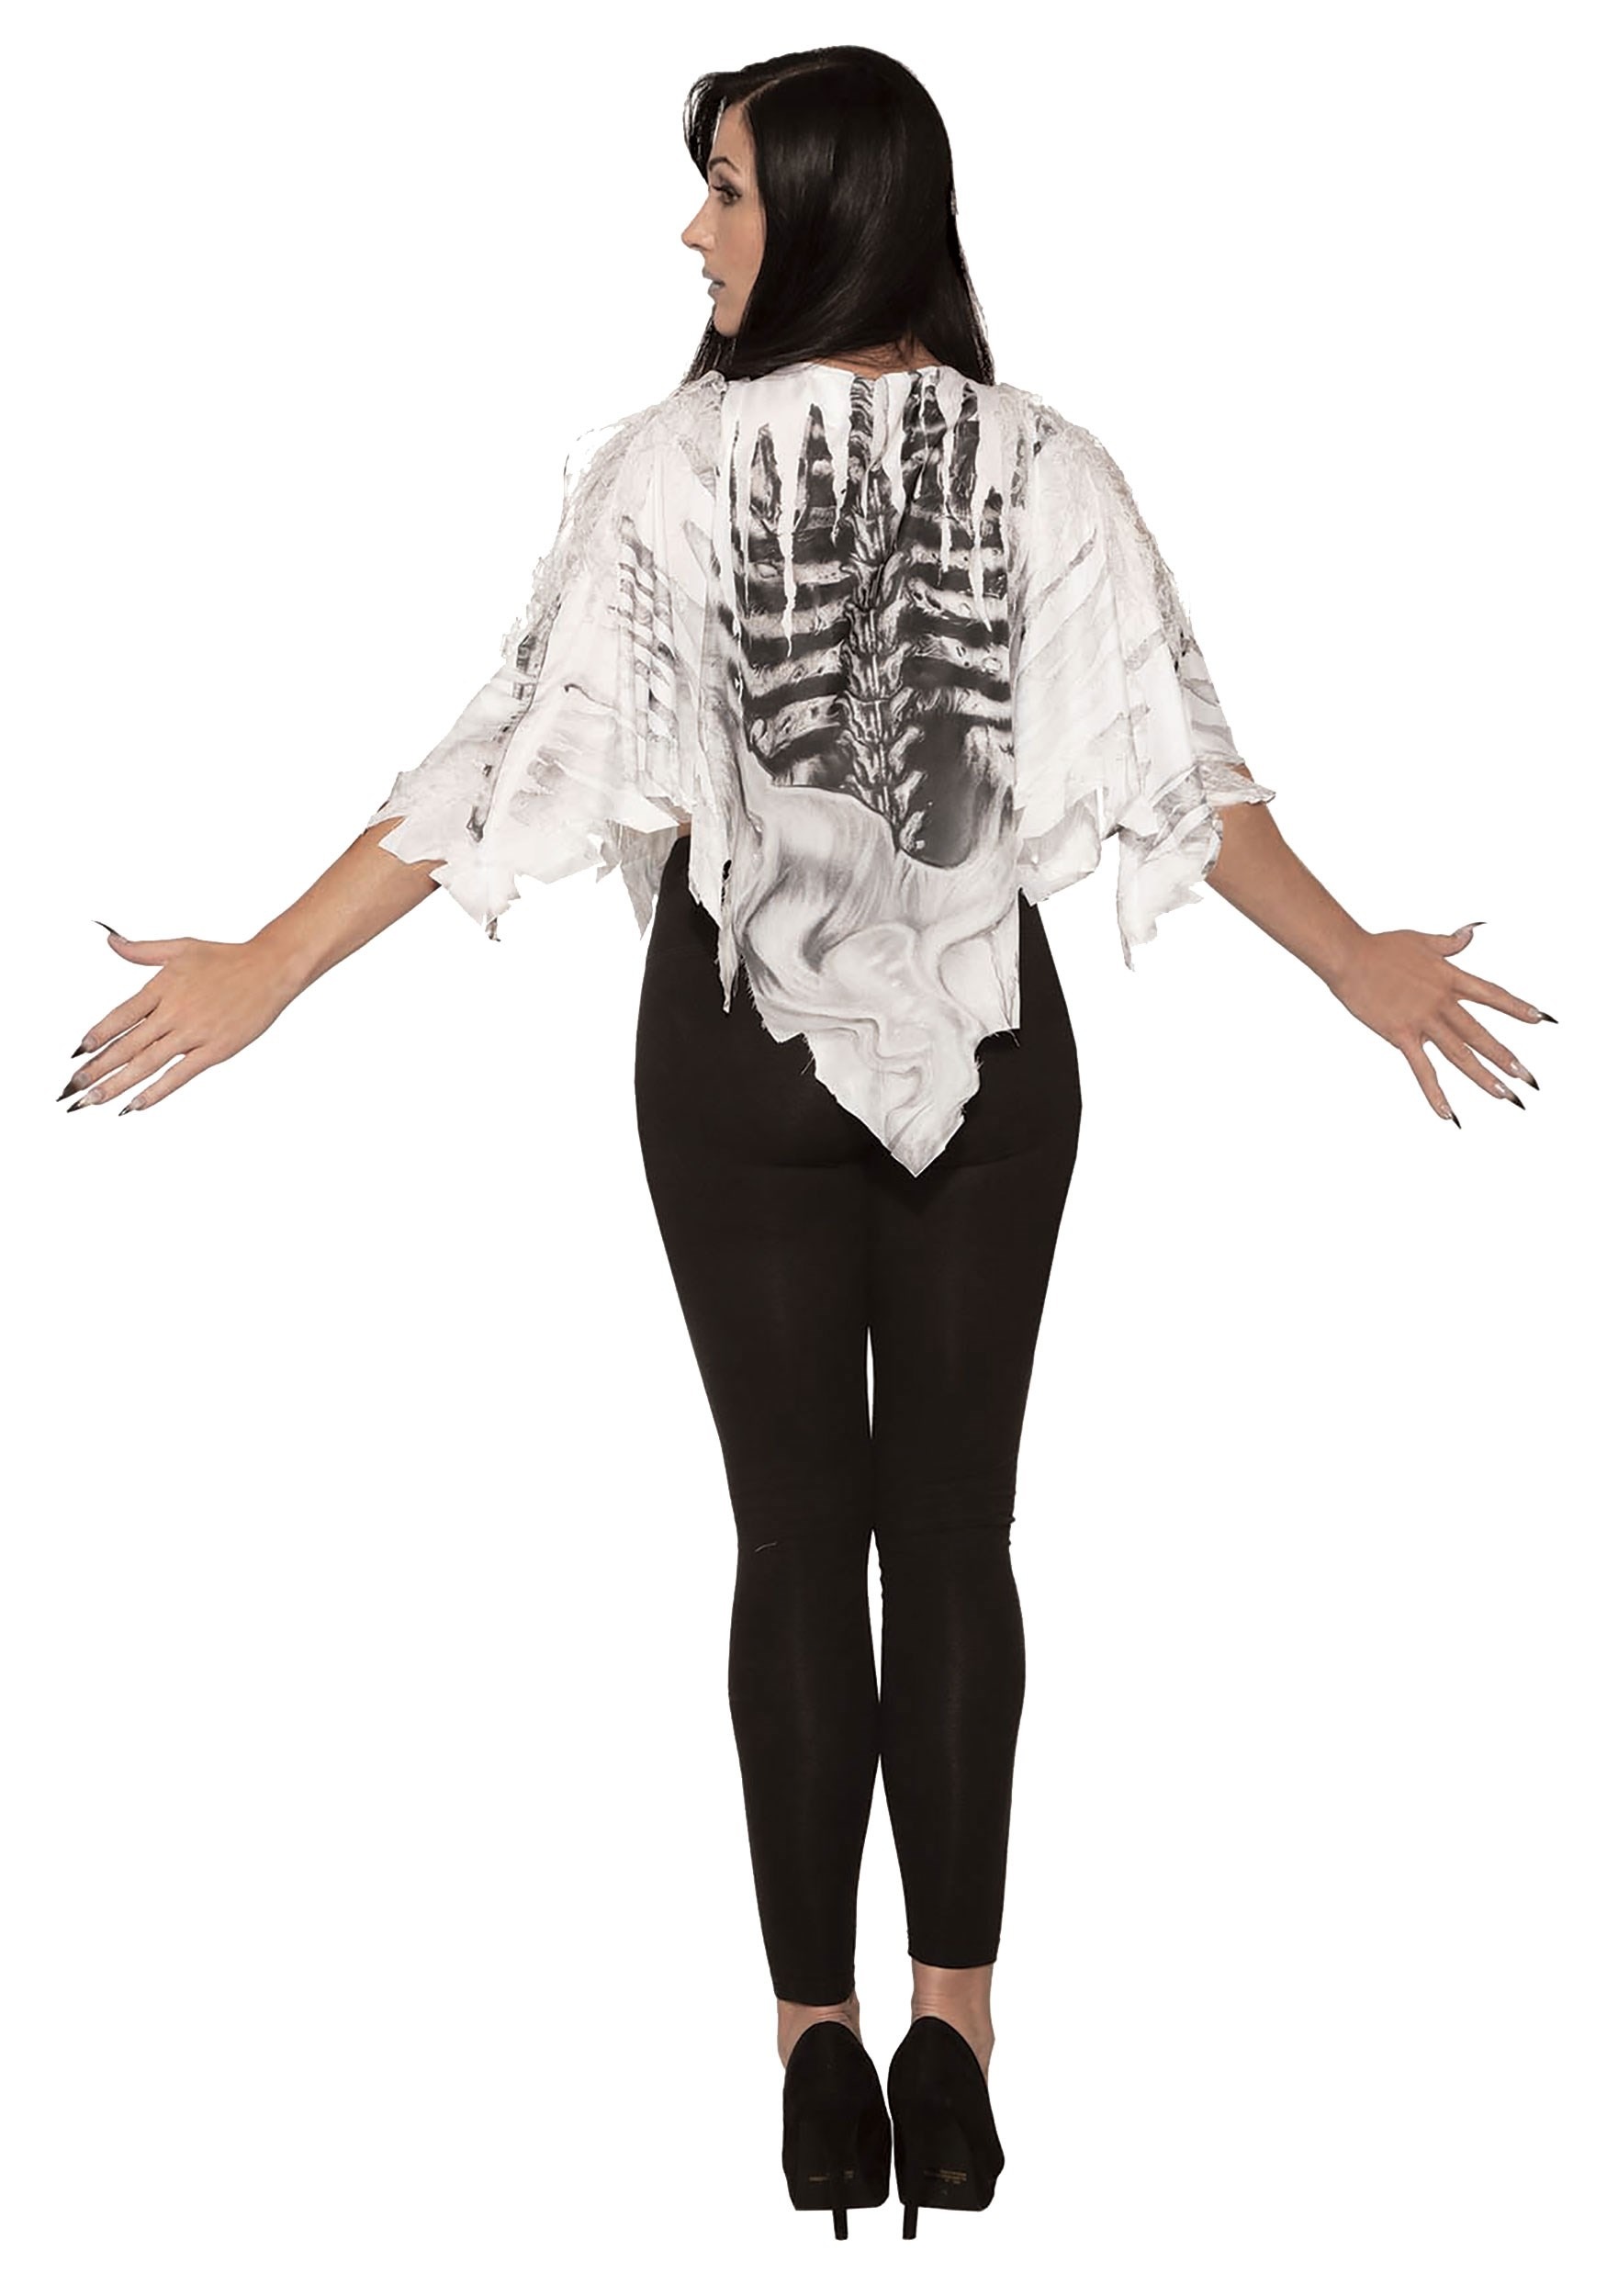 Tattered Skeleton Women's Poncho Costume